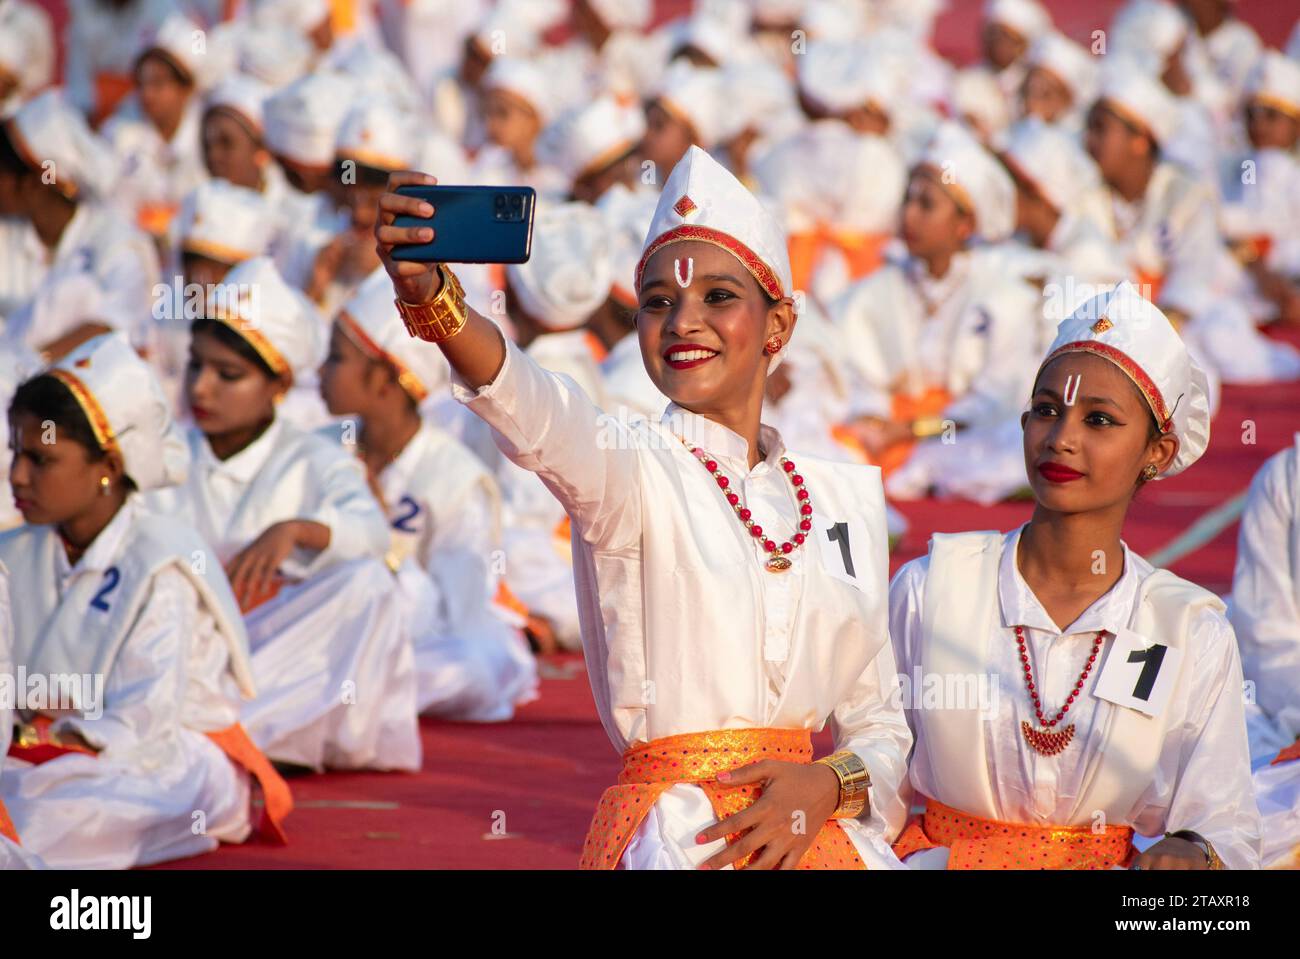 Hunderte von Kindern warten auf ihren Auftritt, während sie an einem kulturellen Programm teilnehmen, bei dem Babasaheb Ambedkar am 3. Dezember 2023 in Guwahati, Assam, Indien, sterben wird. Bhimrao Ambedkar war der Vater der indischen Verfassung. Quelle: David Talukdar/Alamy Live News Stockfoto